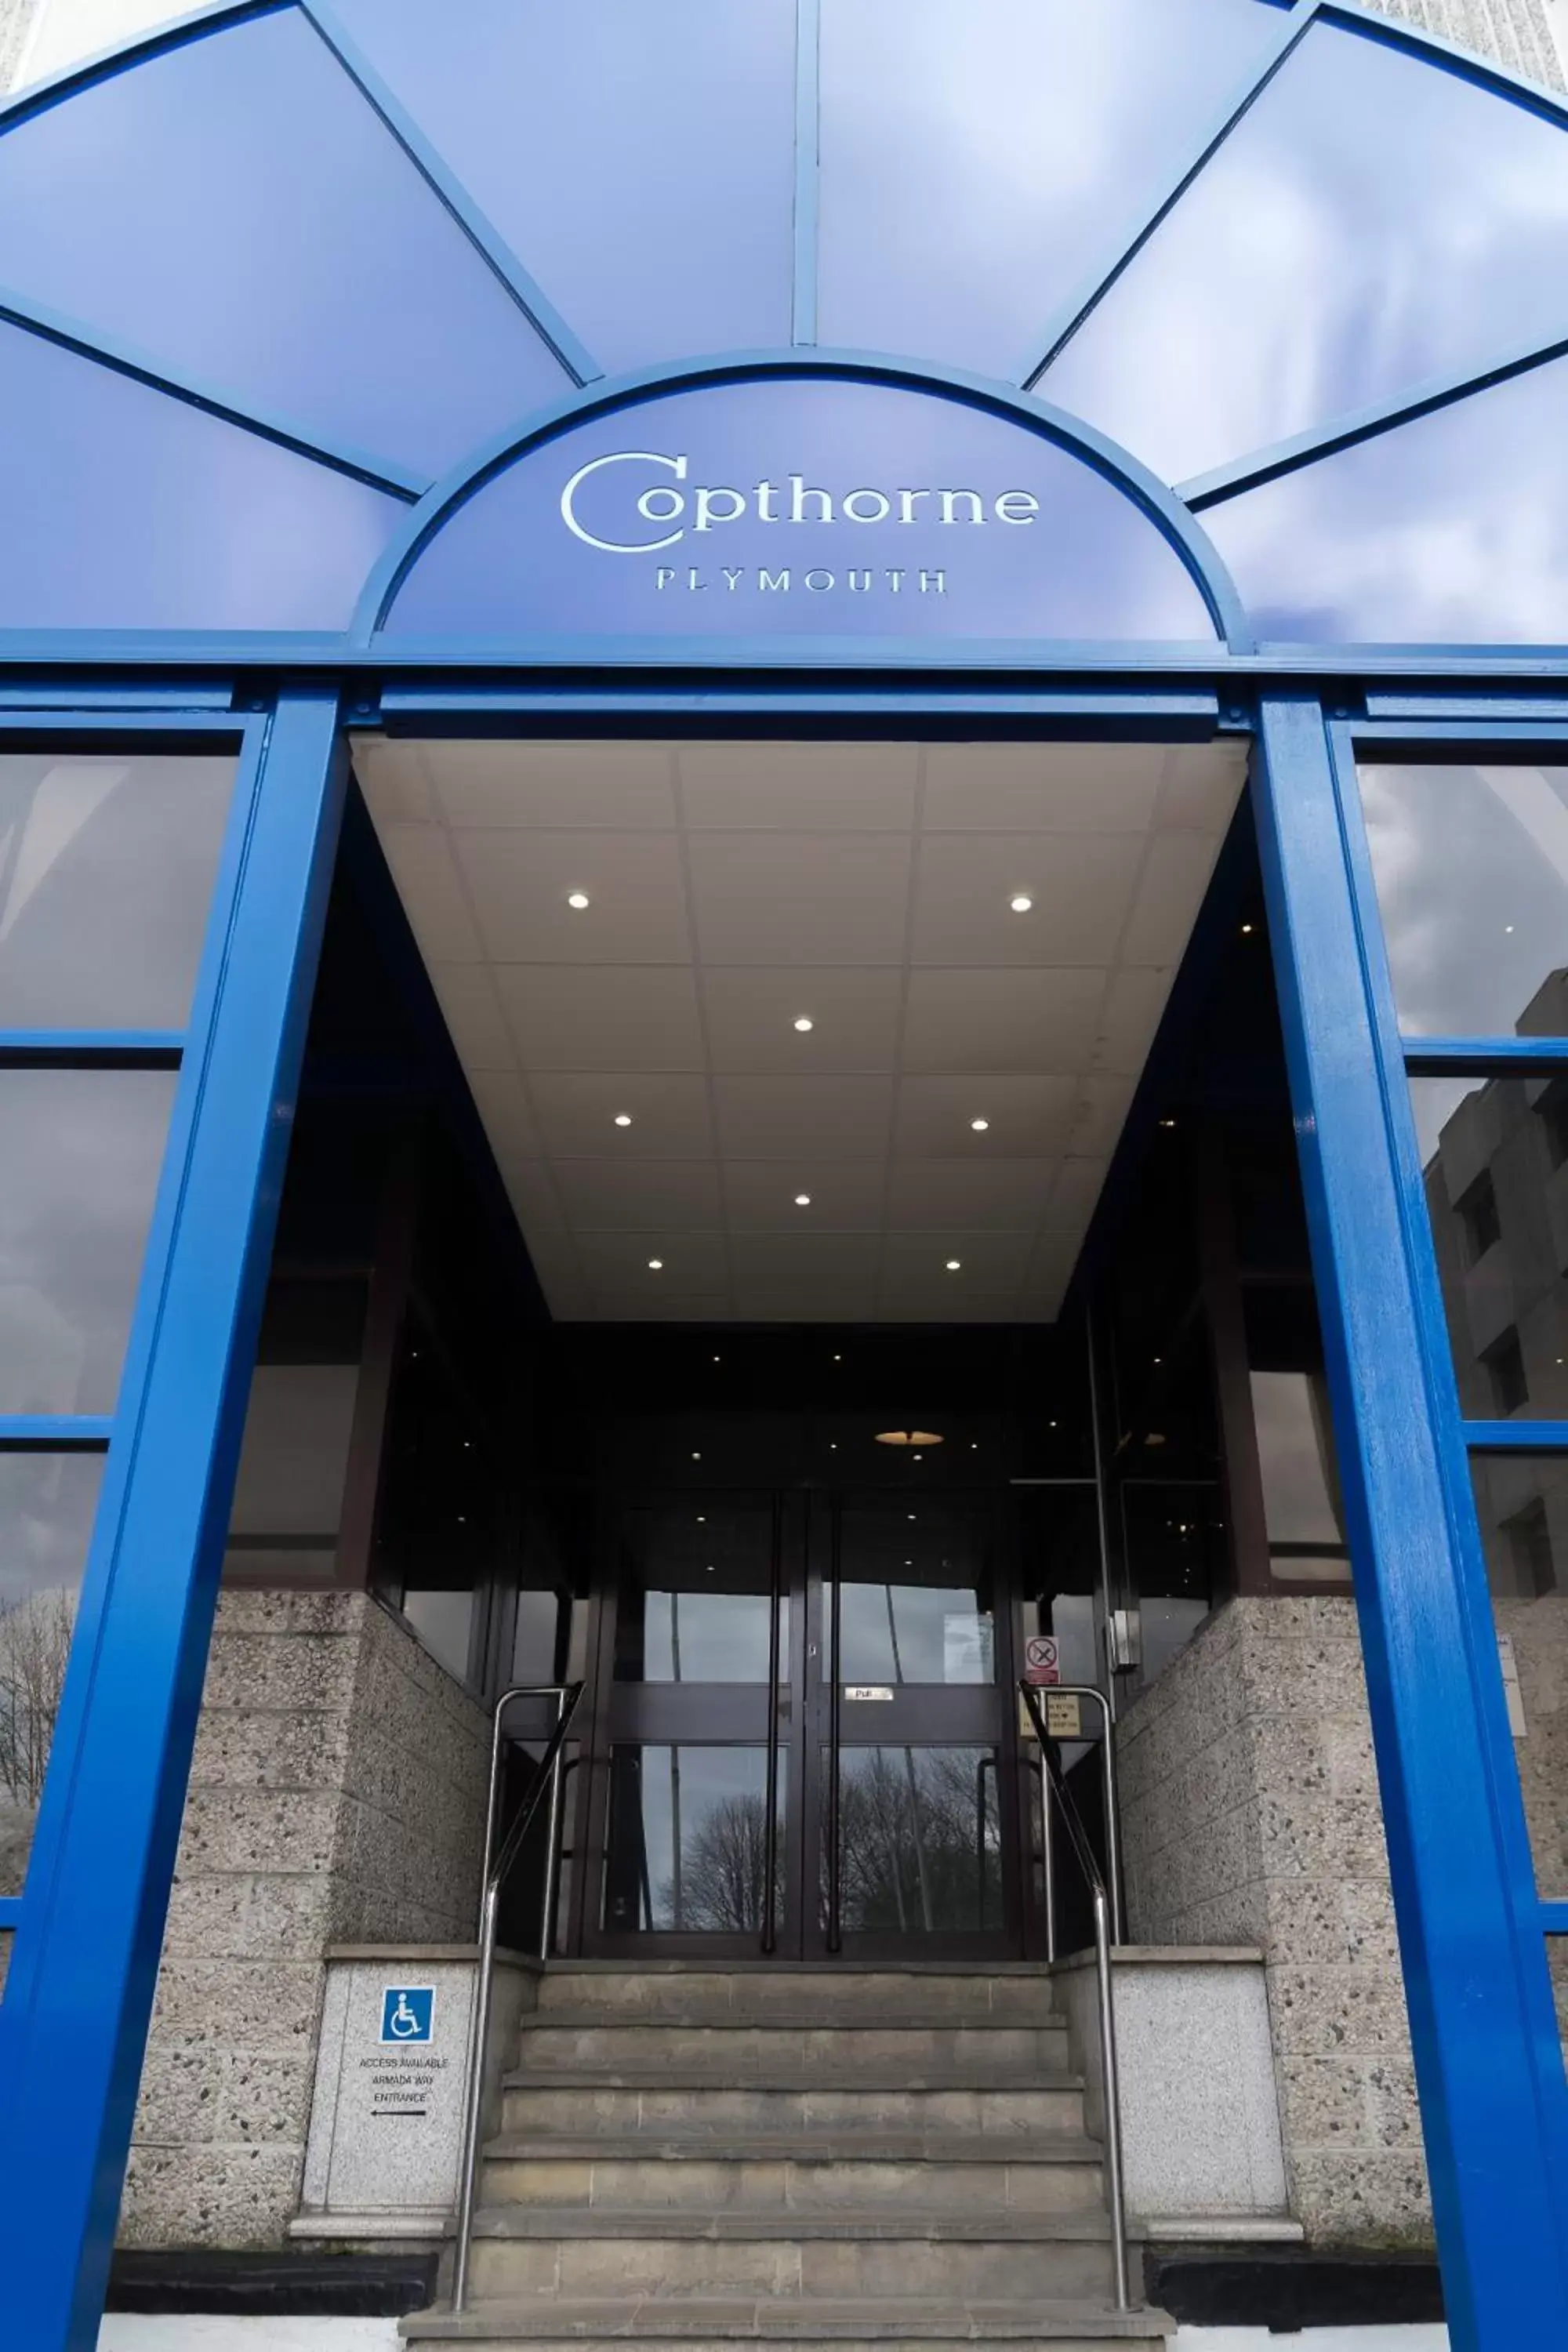 Facade/entrance in Copthorne Hotel Plymouth